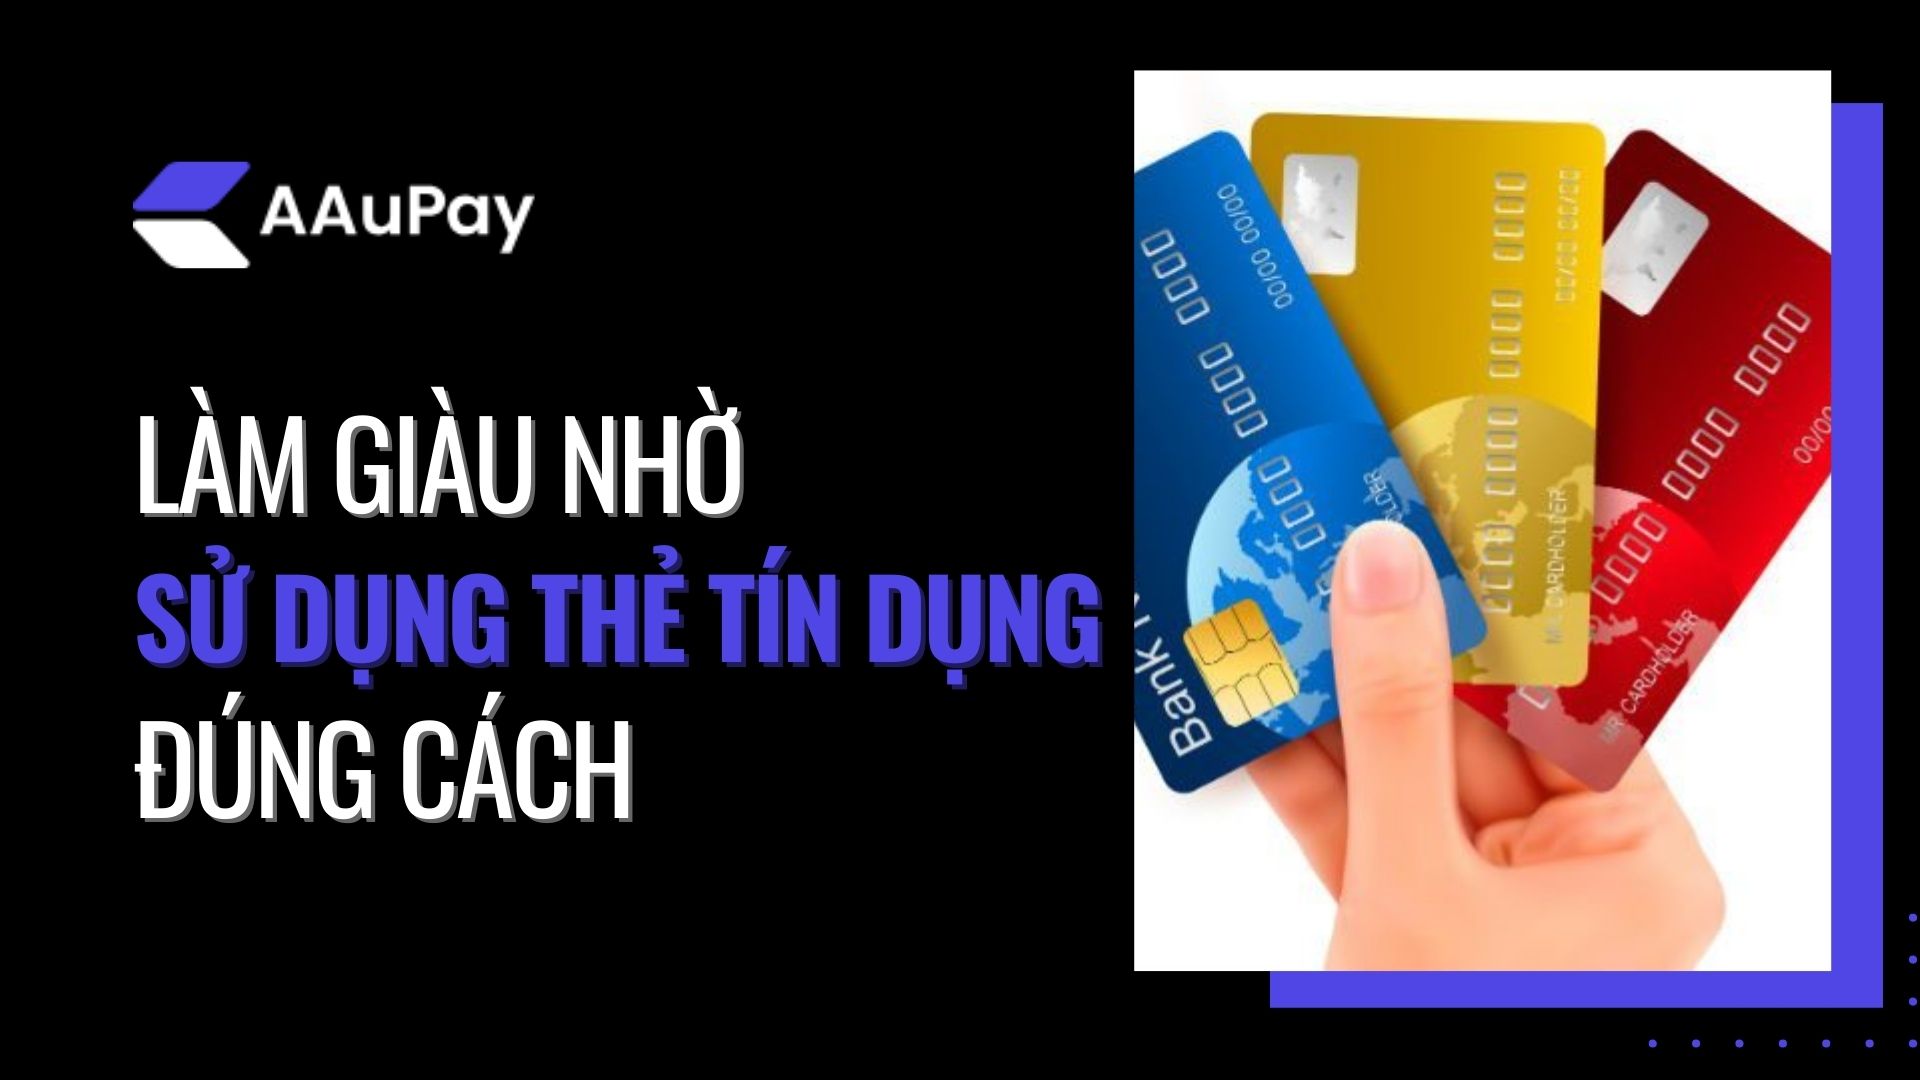 Làm giàu nhờ sử dụng thẻ tín dụng đúng cách - Aaupay Dịch Vụ Rút Tiền Thẻ Tín Dụng